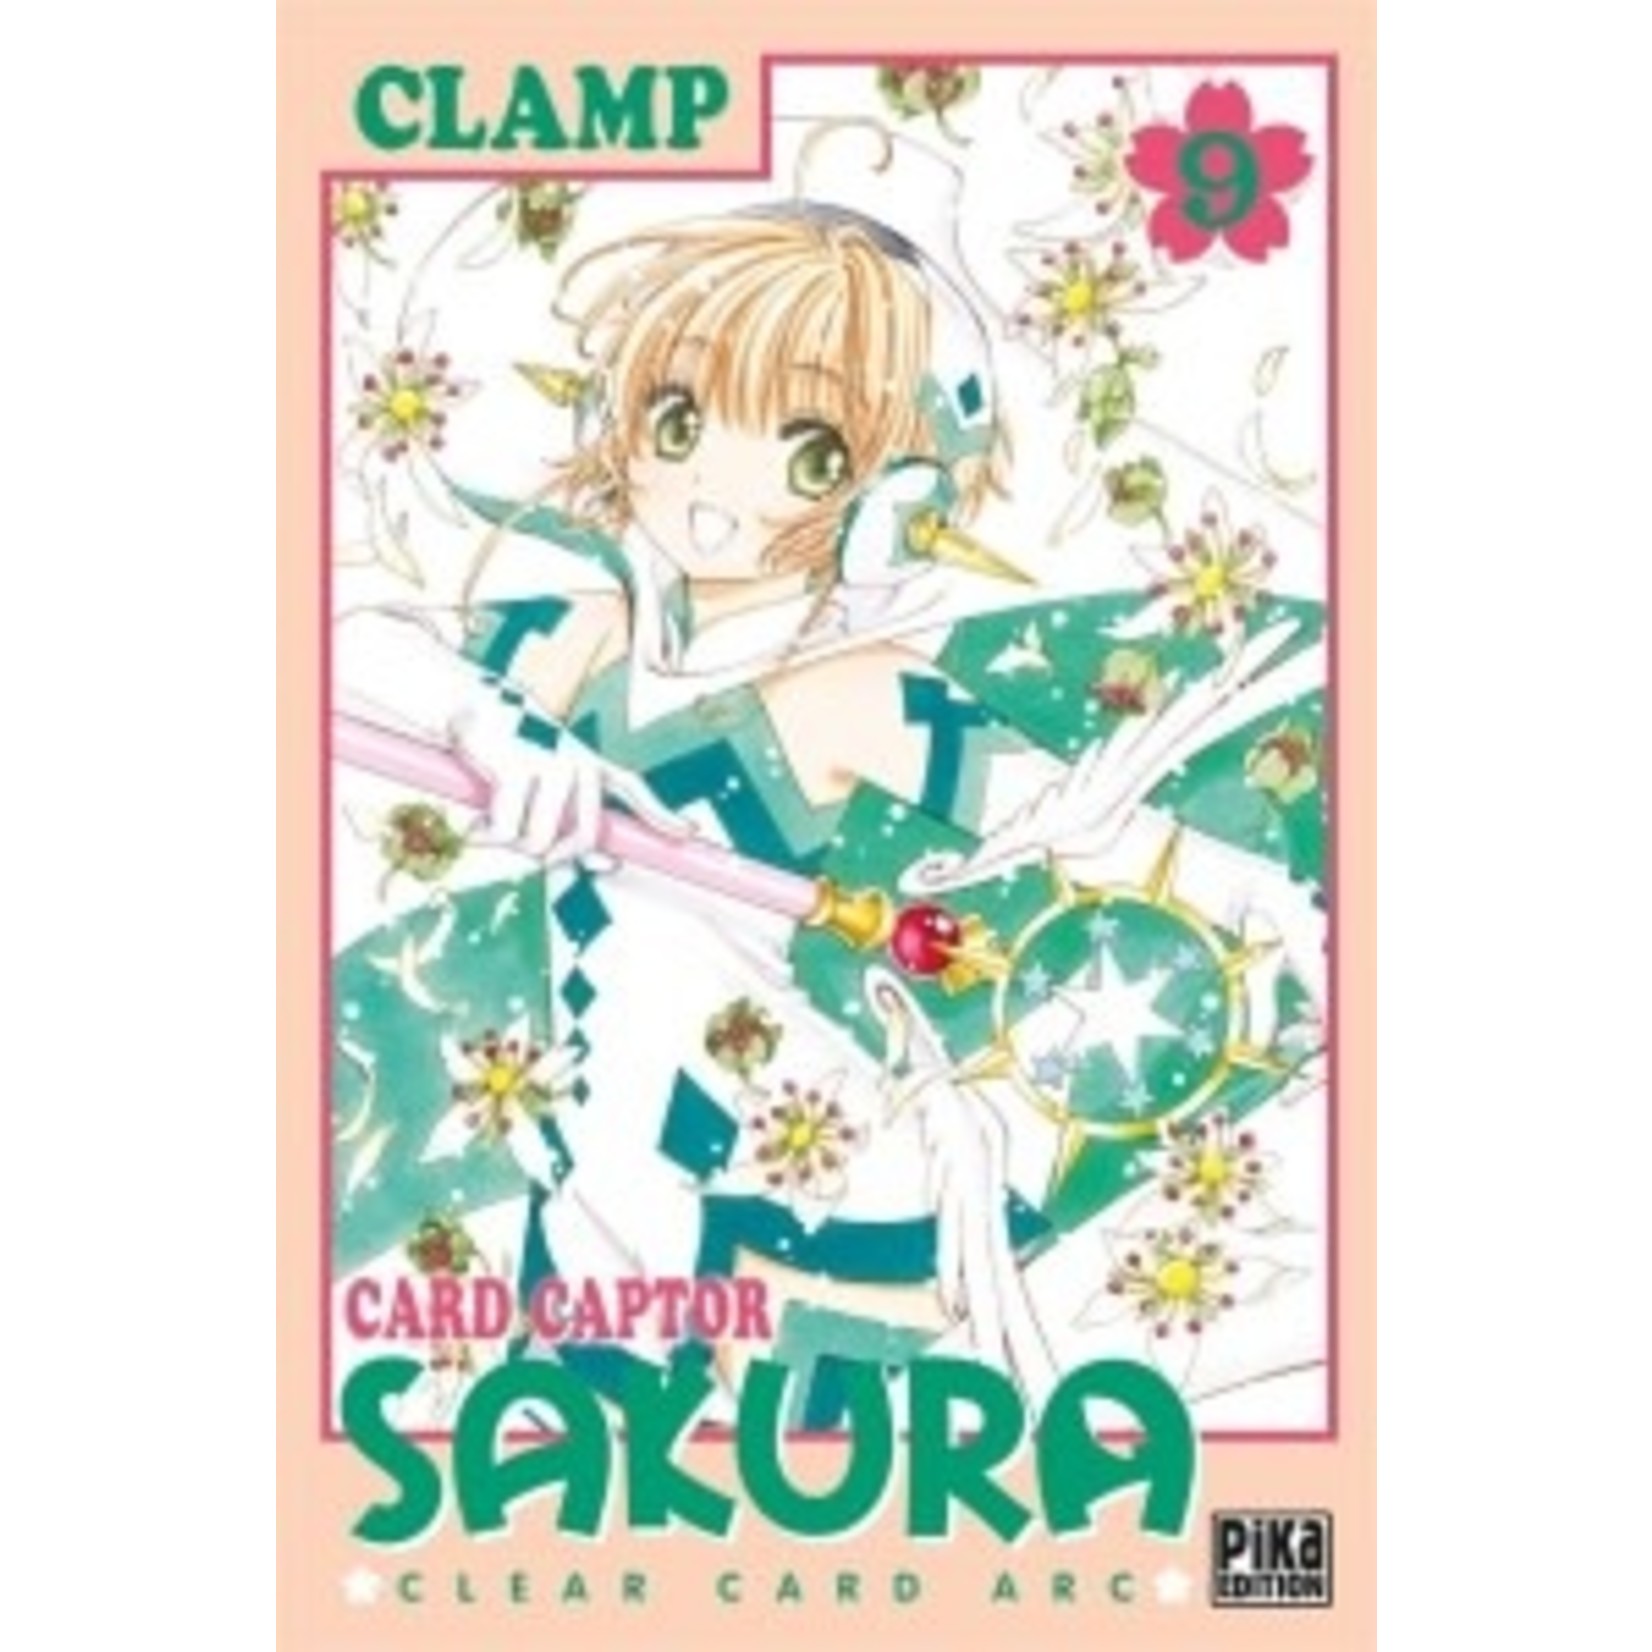 0-Pika Card Captor Sakura - Clear Card